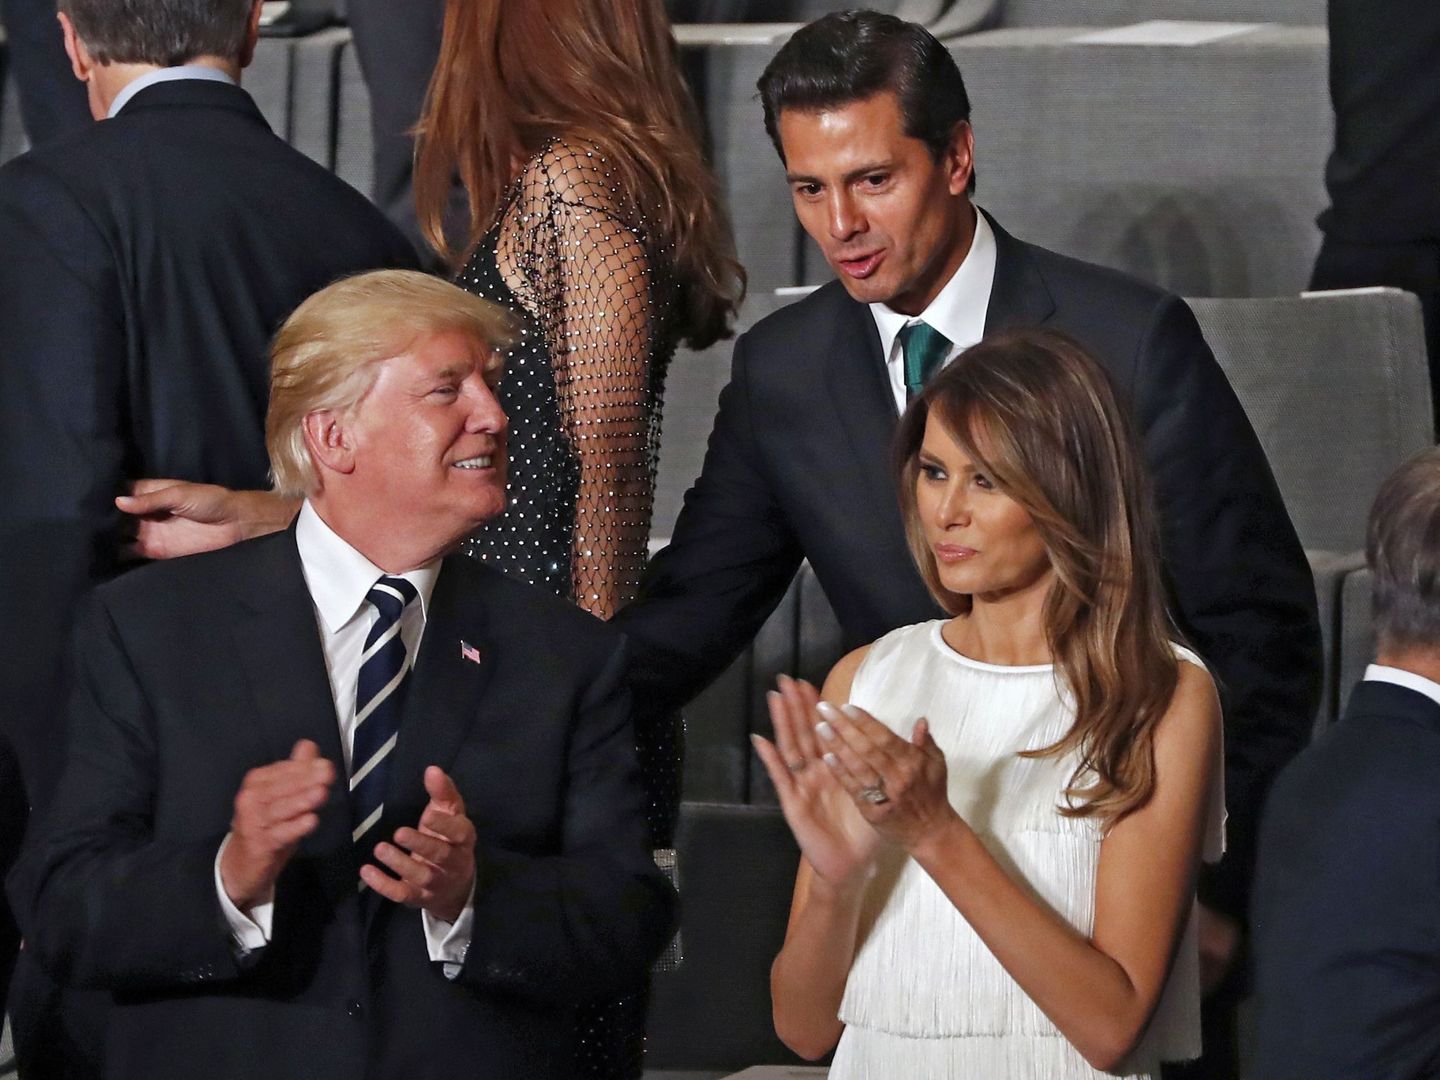 El presidente mexicano Enrique Peña Nieto saluda al matrimonio Trump durante la cumbre del G20 en Hamburgo, en julio de 2017. (EFE)